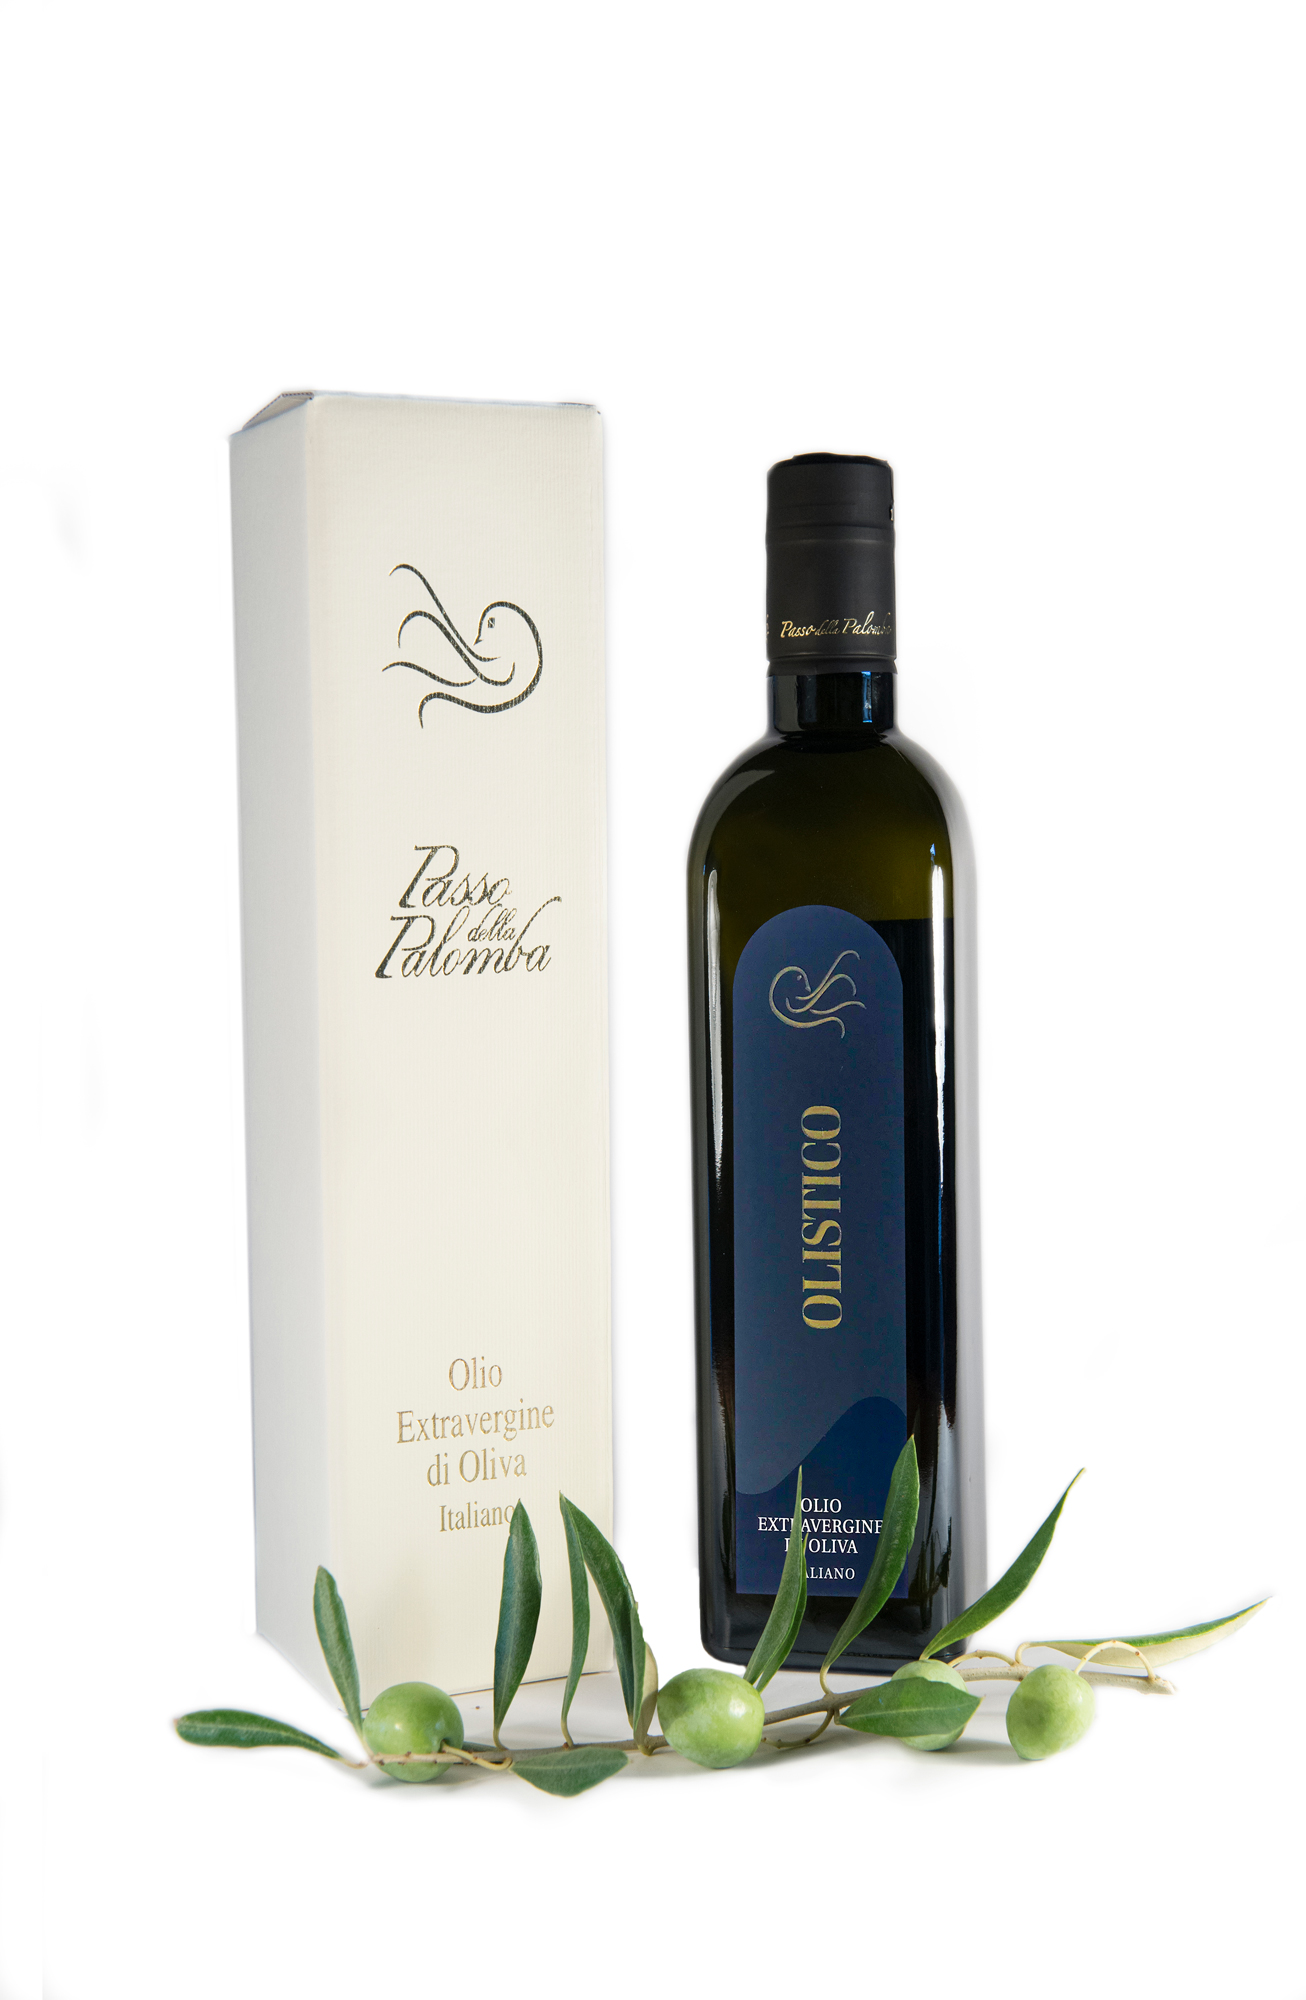 CONFEZIONE REGALO OLII E VINI – Acquisto online – Vendita online olio  extravergine di oliva – EVO 100% italiano